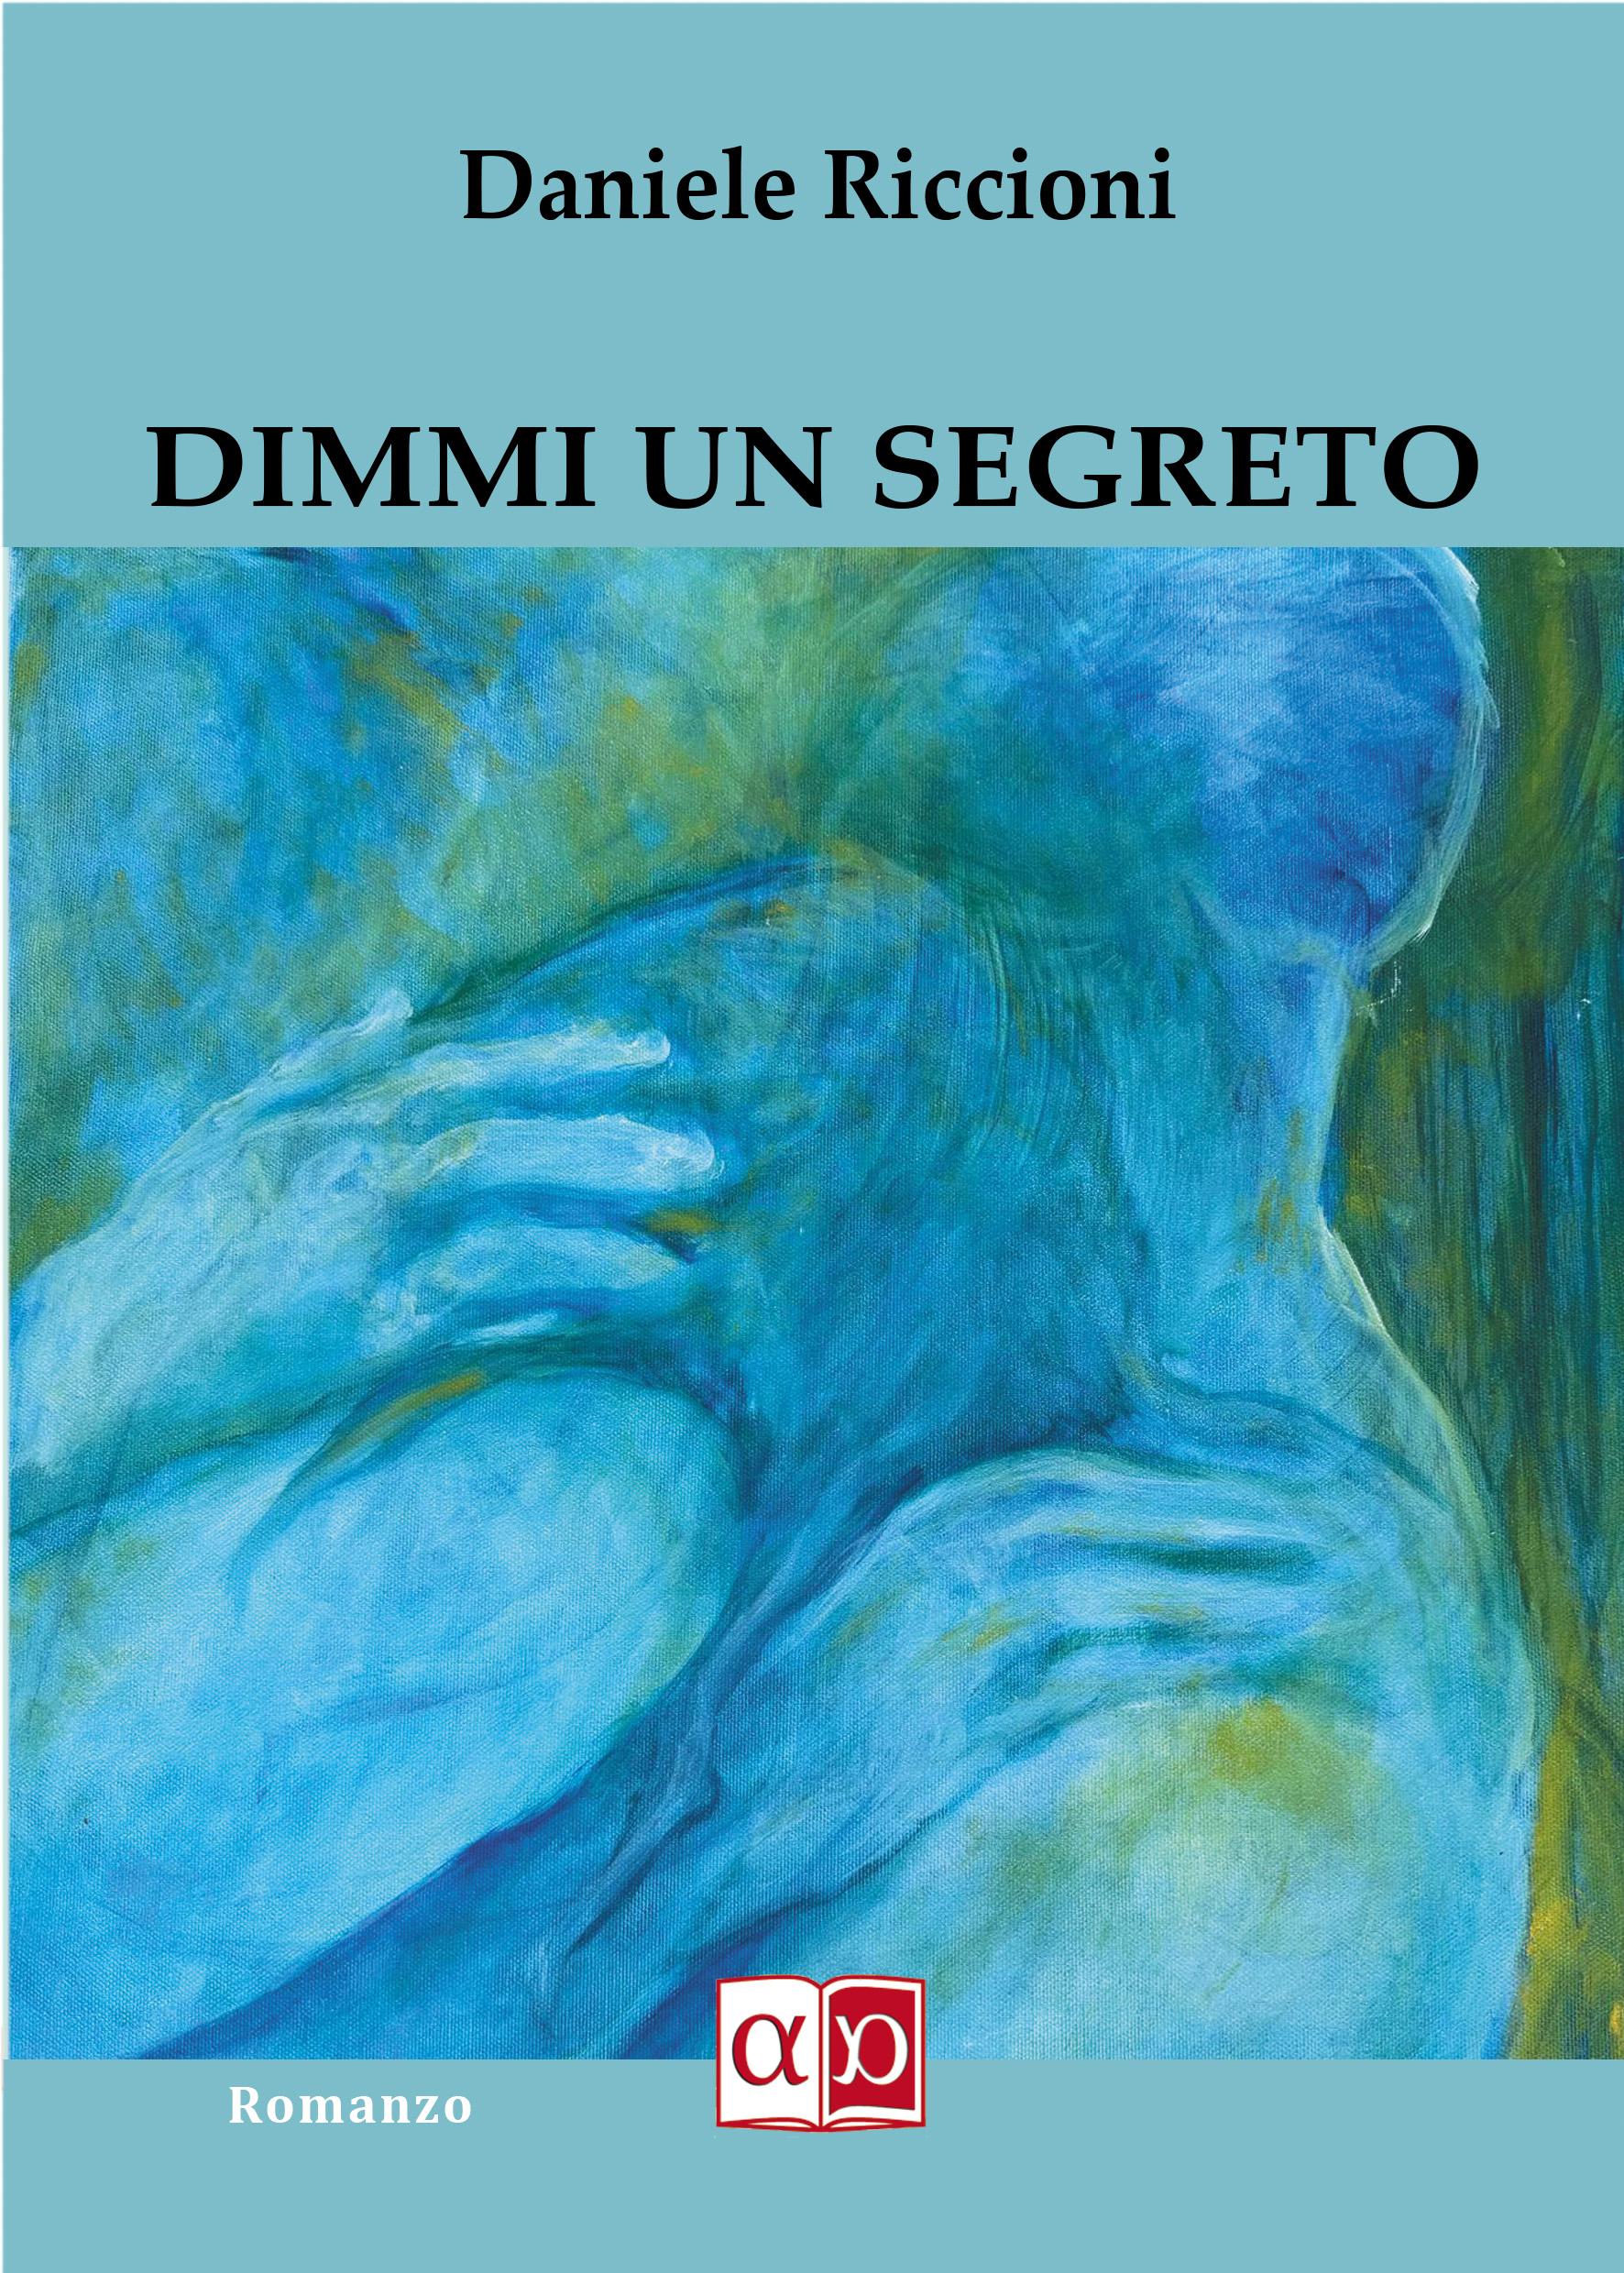 DIMMI UN SEGRETO - Daniele Riccioni